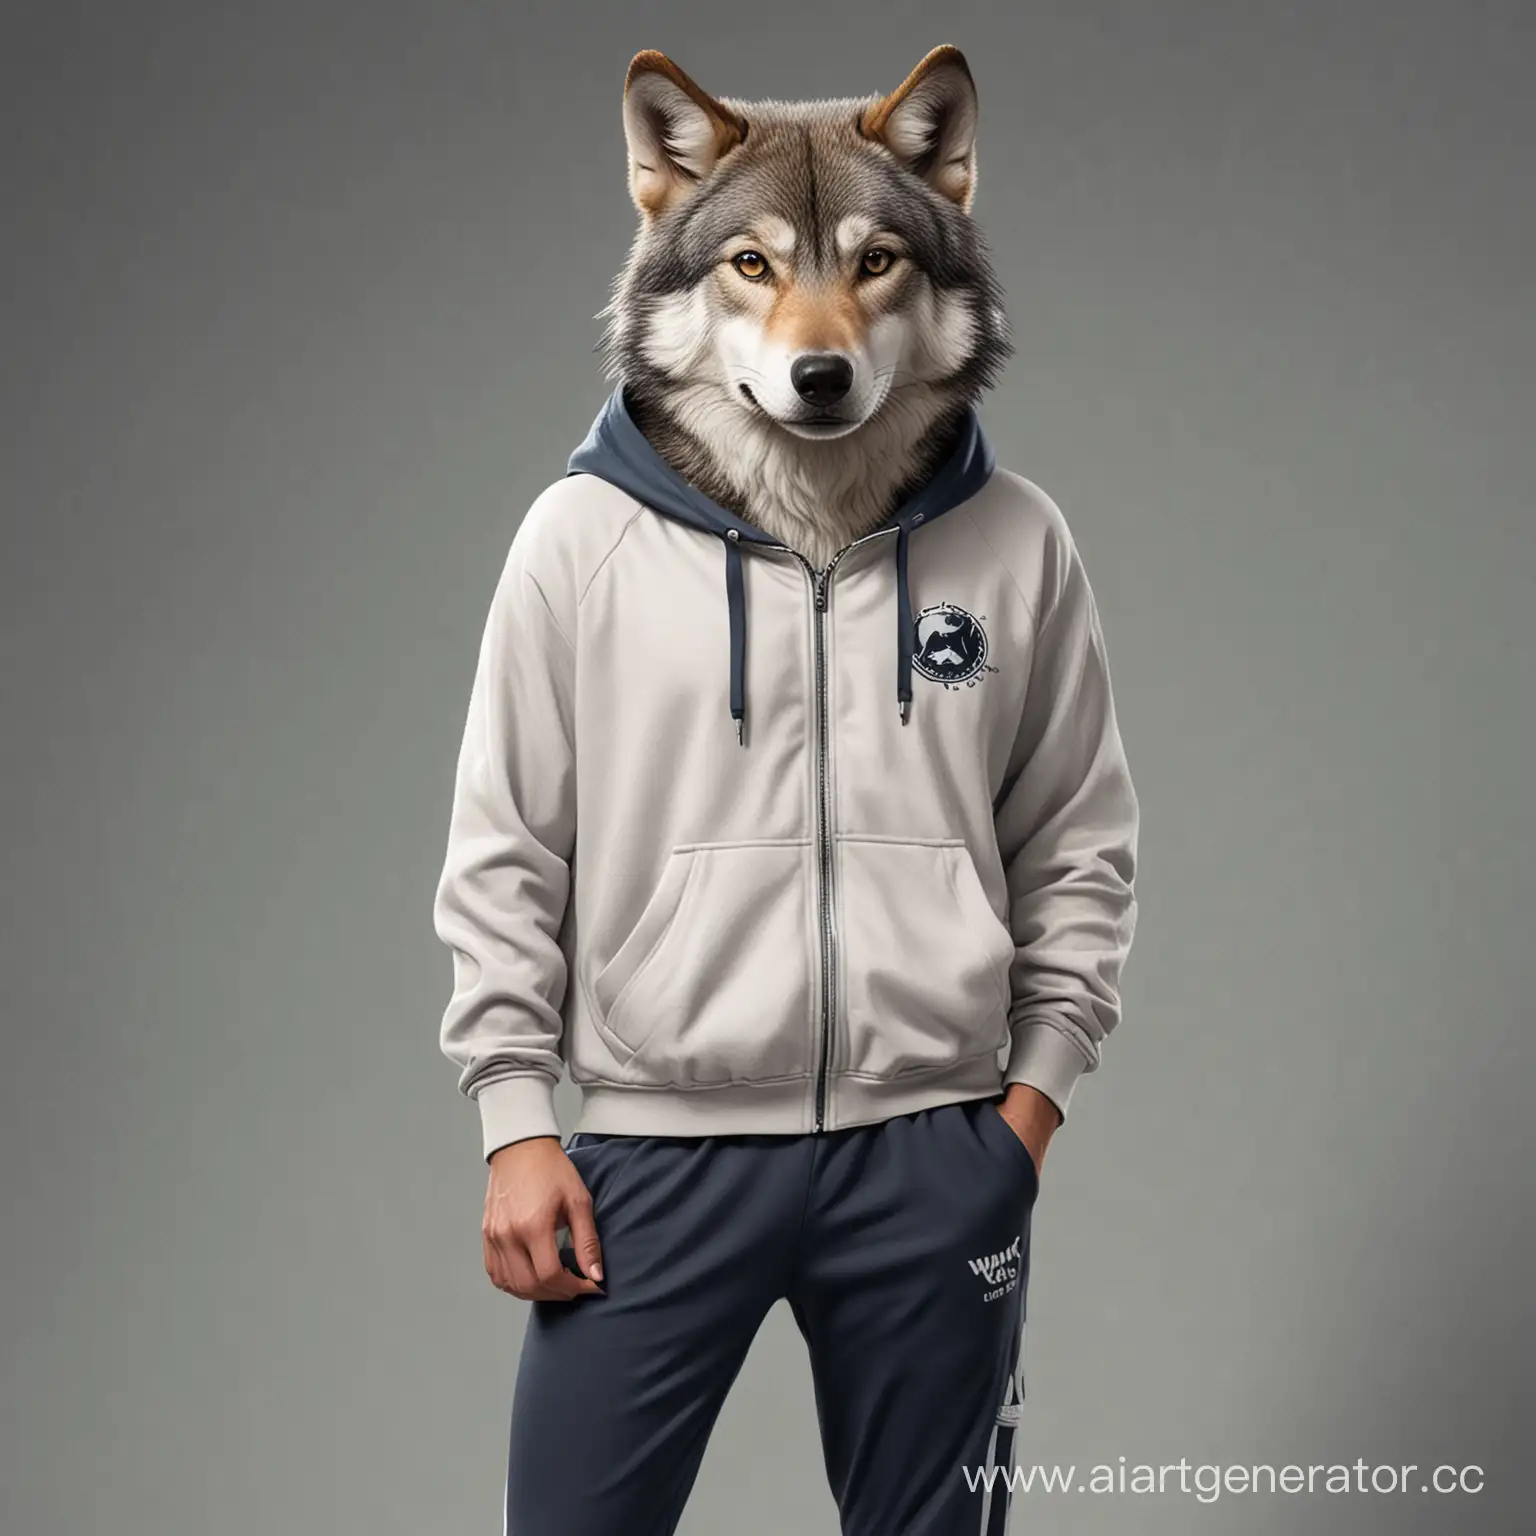 Волк в спортивной одежде